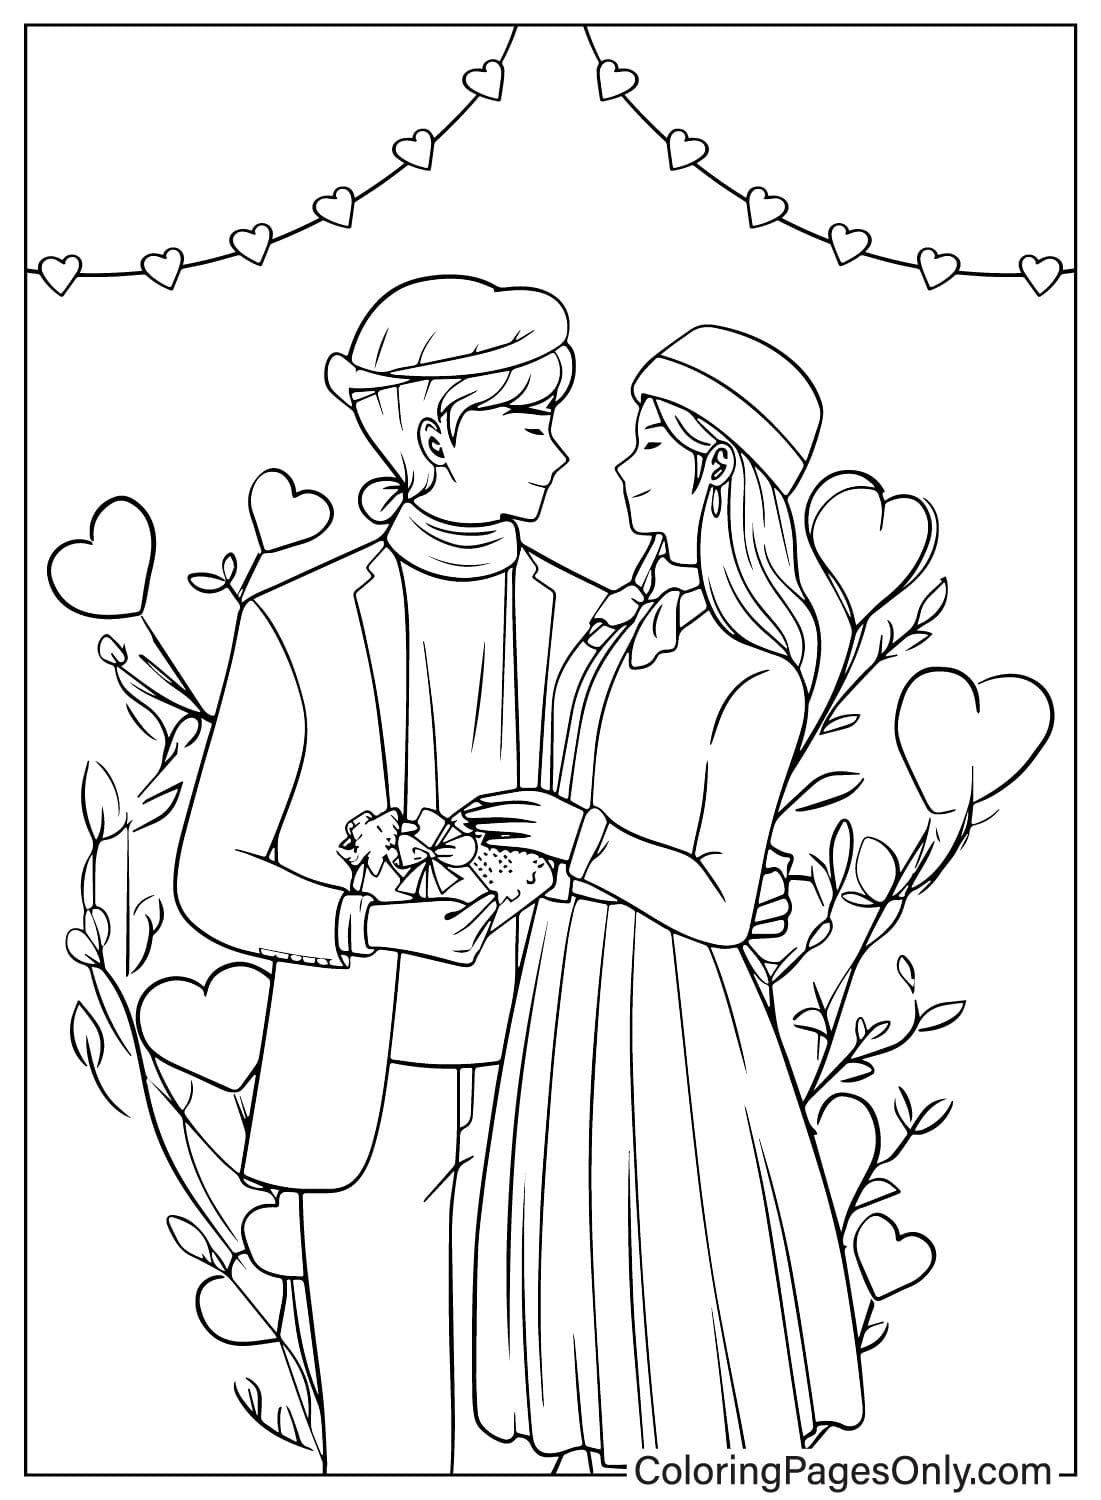 Página para colorear del día de San Valentín imprimible desde el día de San Valentín